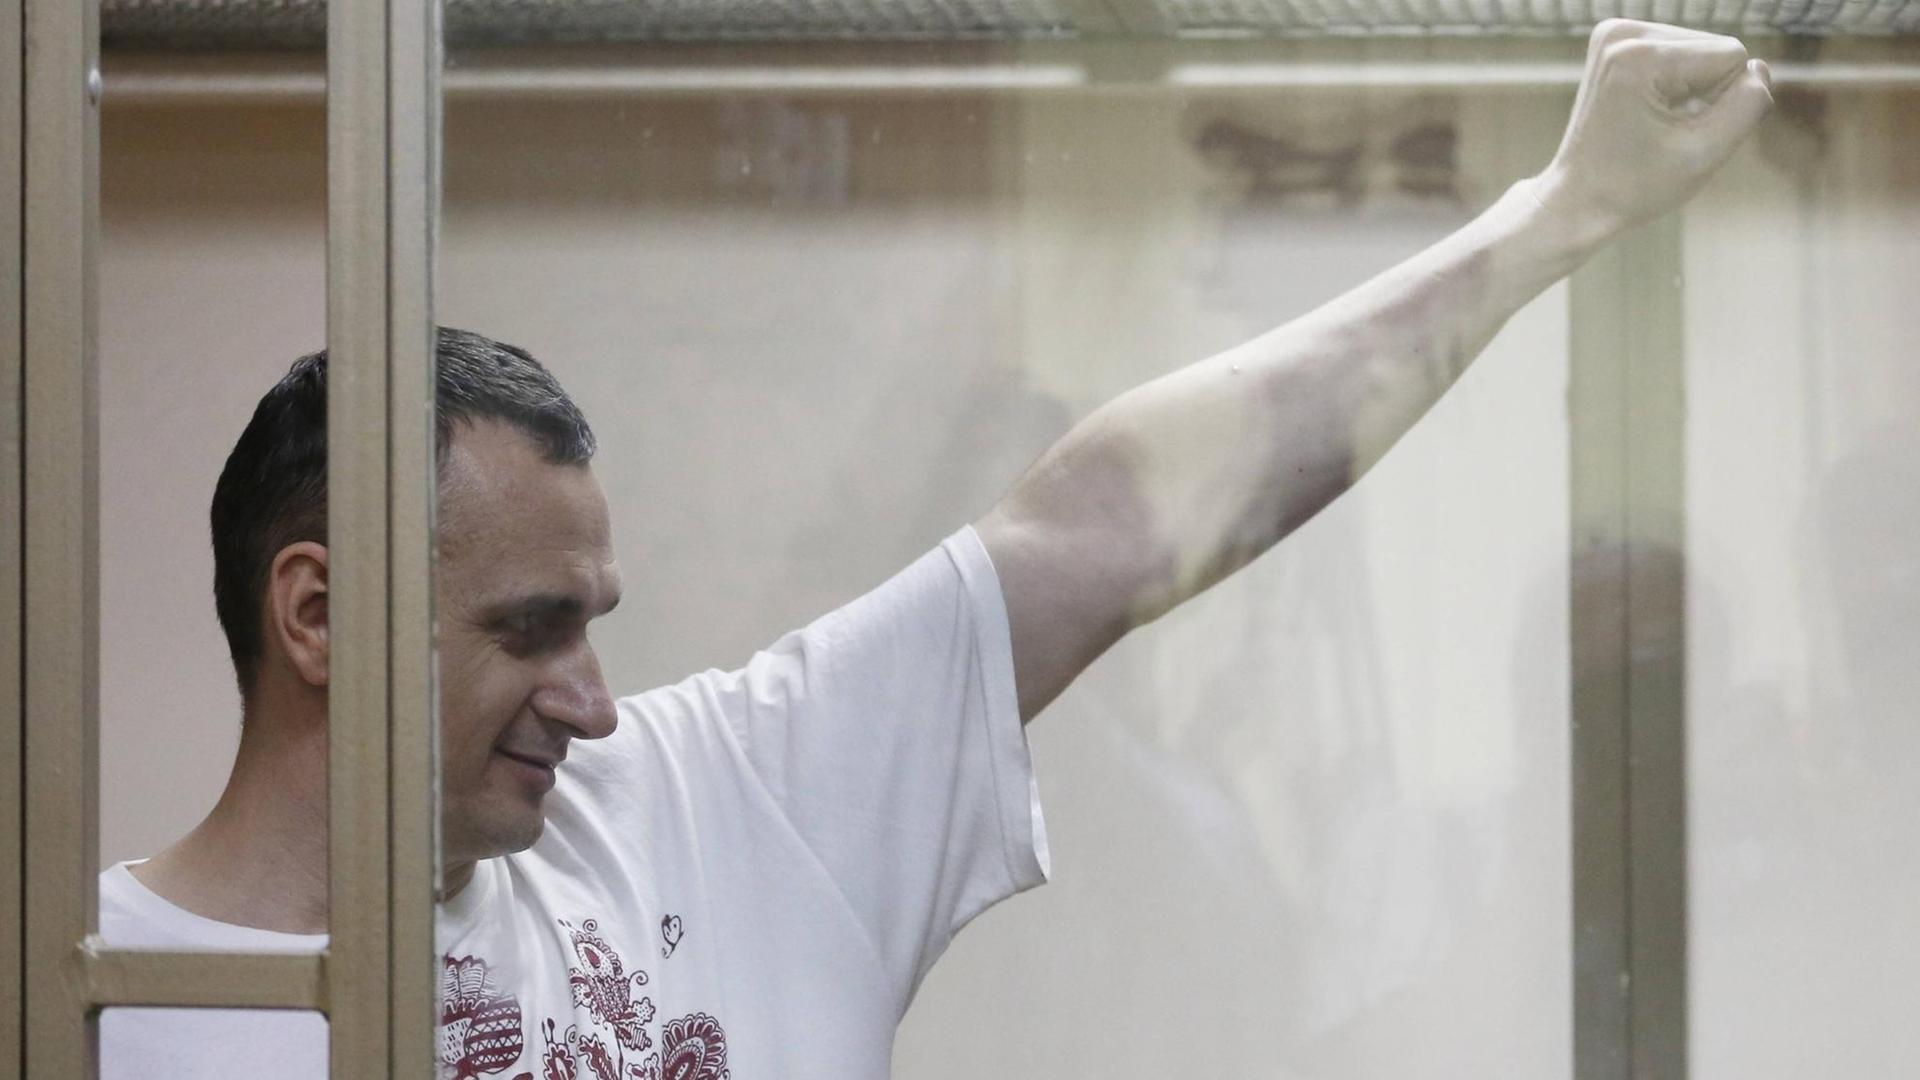 Der ukrainische Regisseur Senzow lächelte während der Urteilsverkündung und streckte die linke Faust hoch.